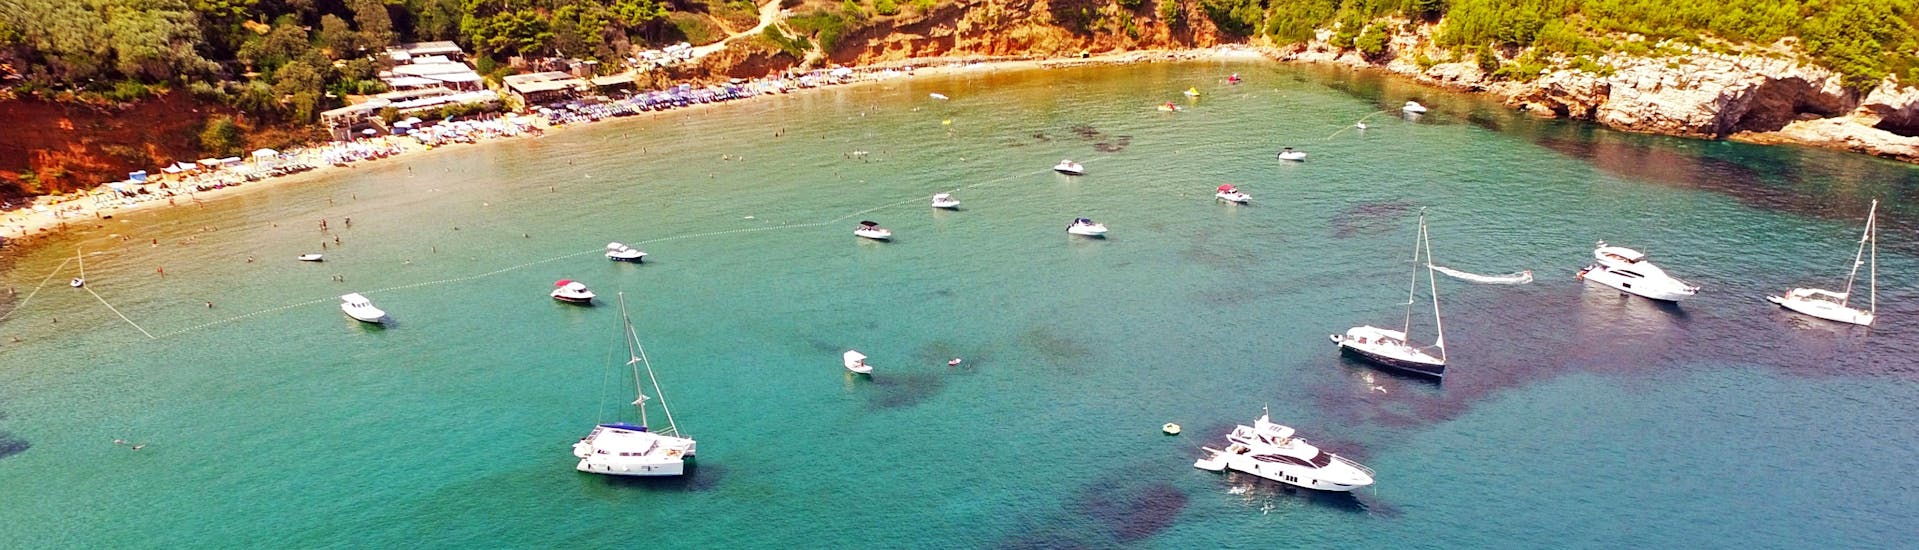 Vista de la bahía durante el paseo privado en barco de día completo desde Dubrovnik a las islas Elaphiti, organizado por Snooky Tours Dubrovnik